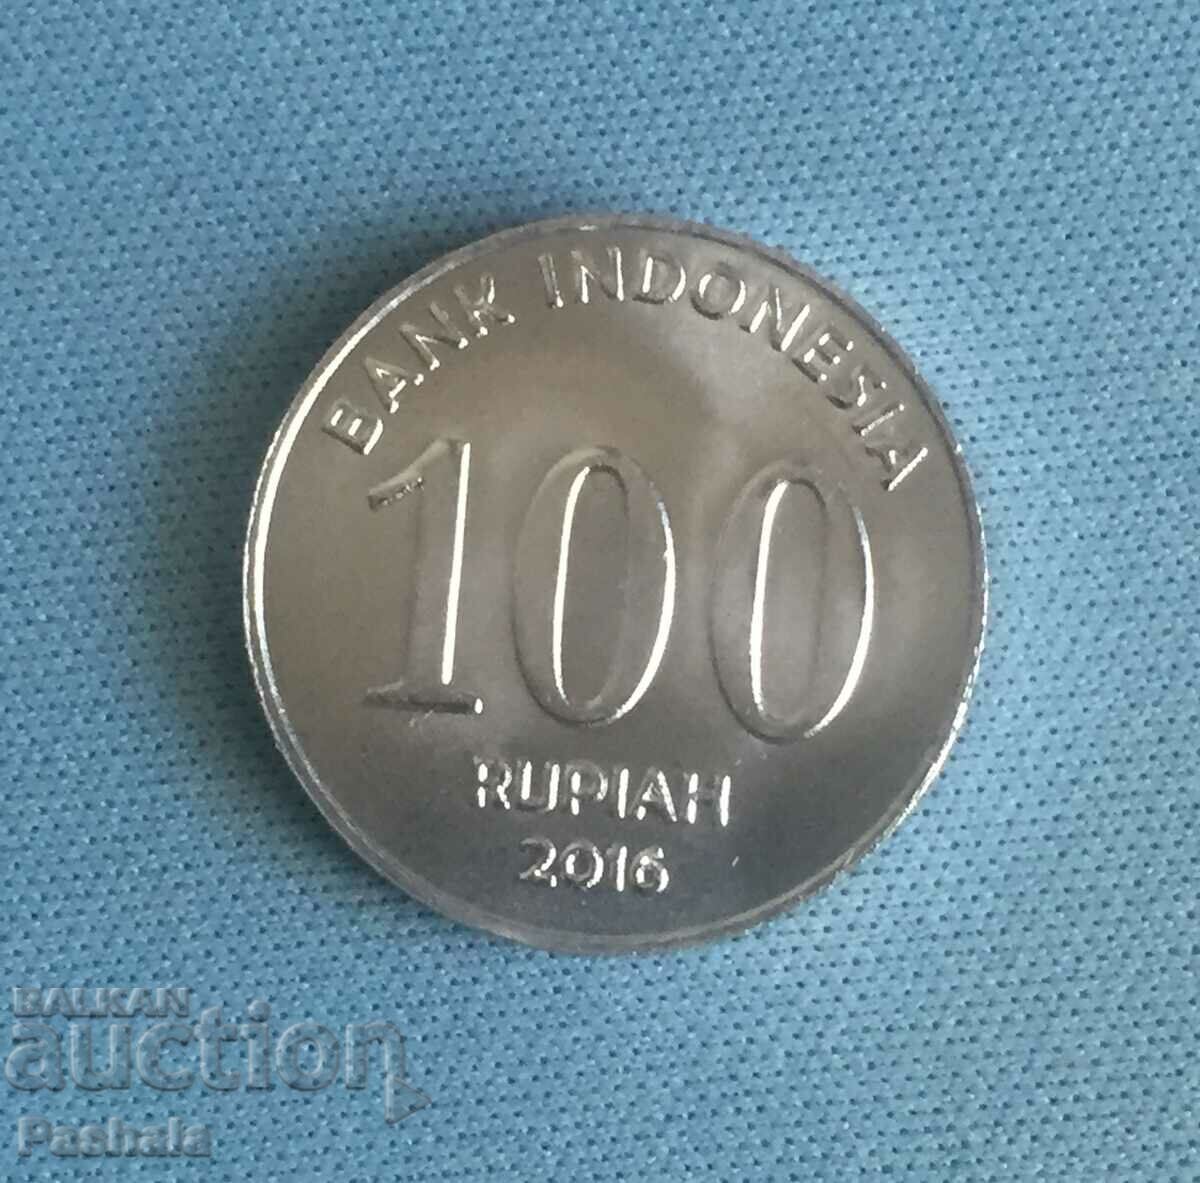 Indonesia 100 rupees 2016